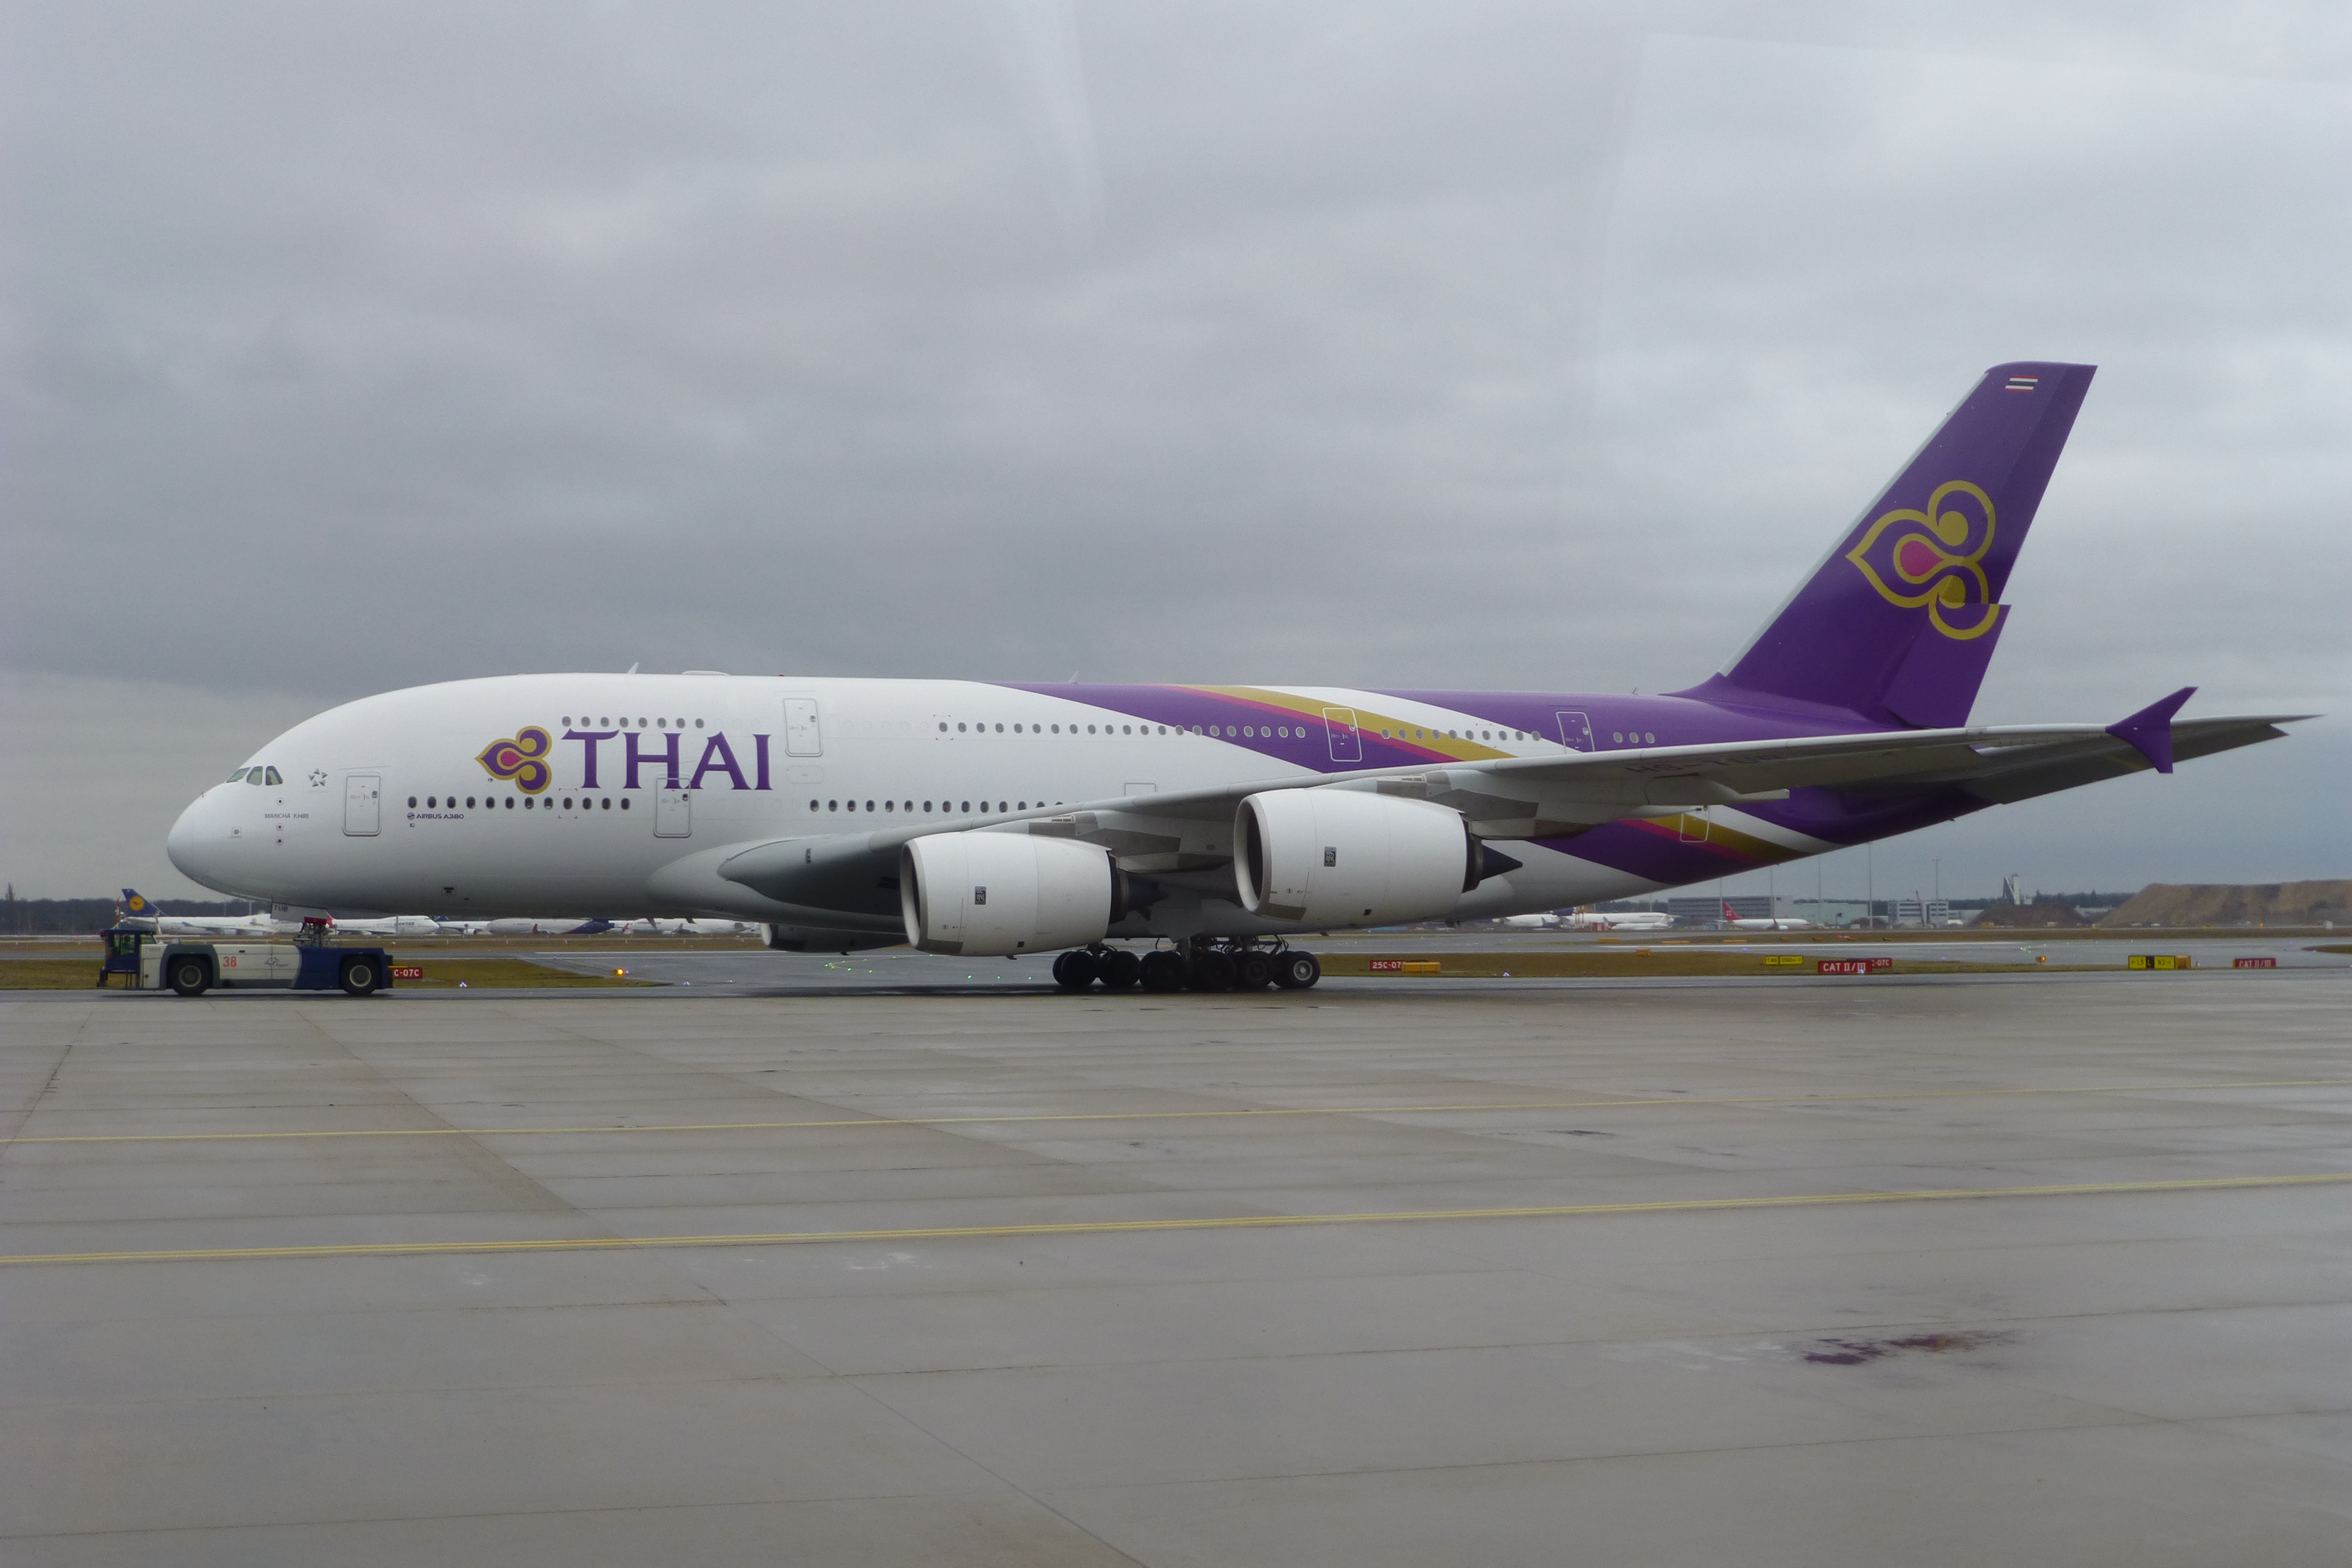 Thai - A380